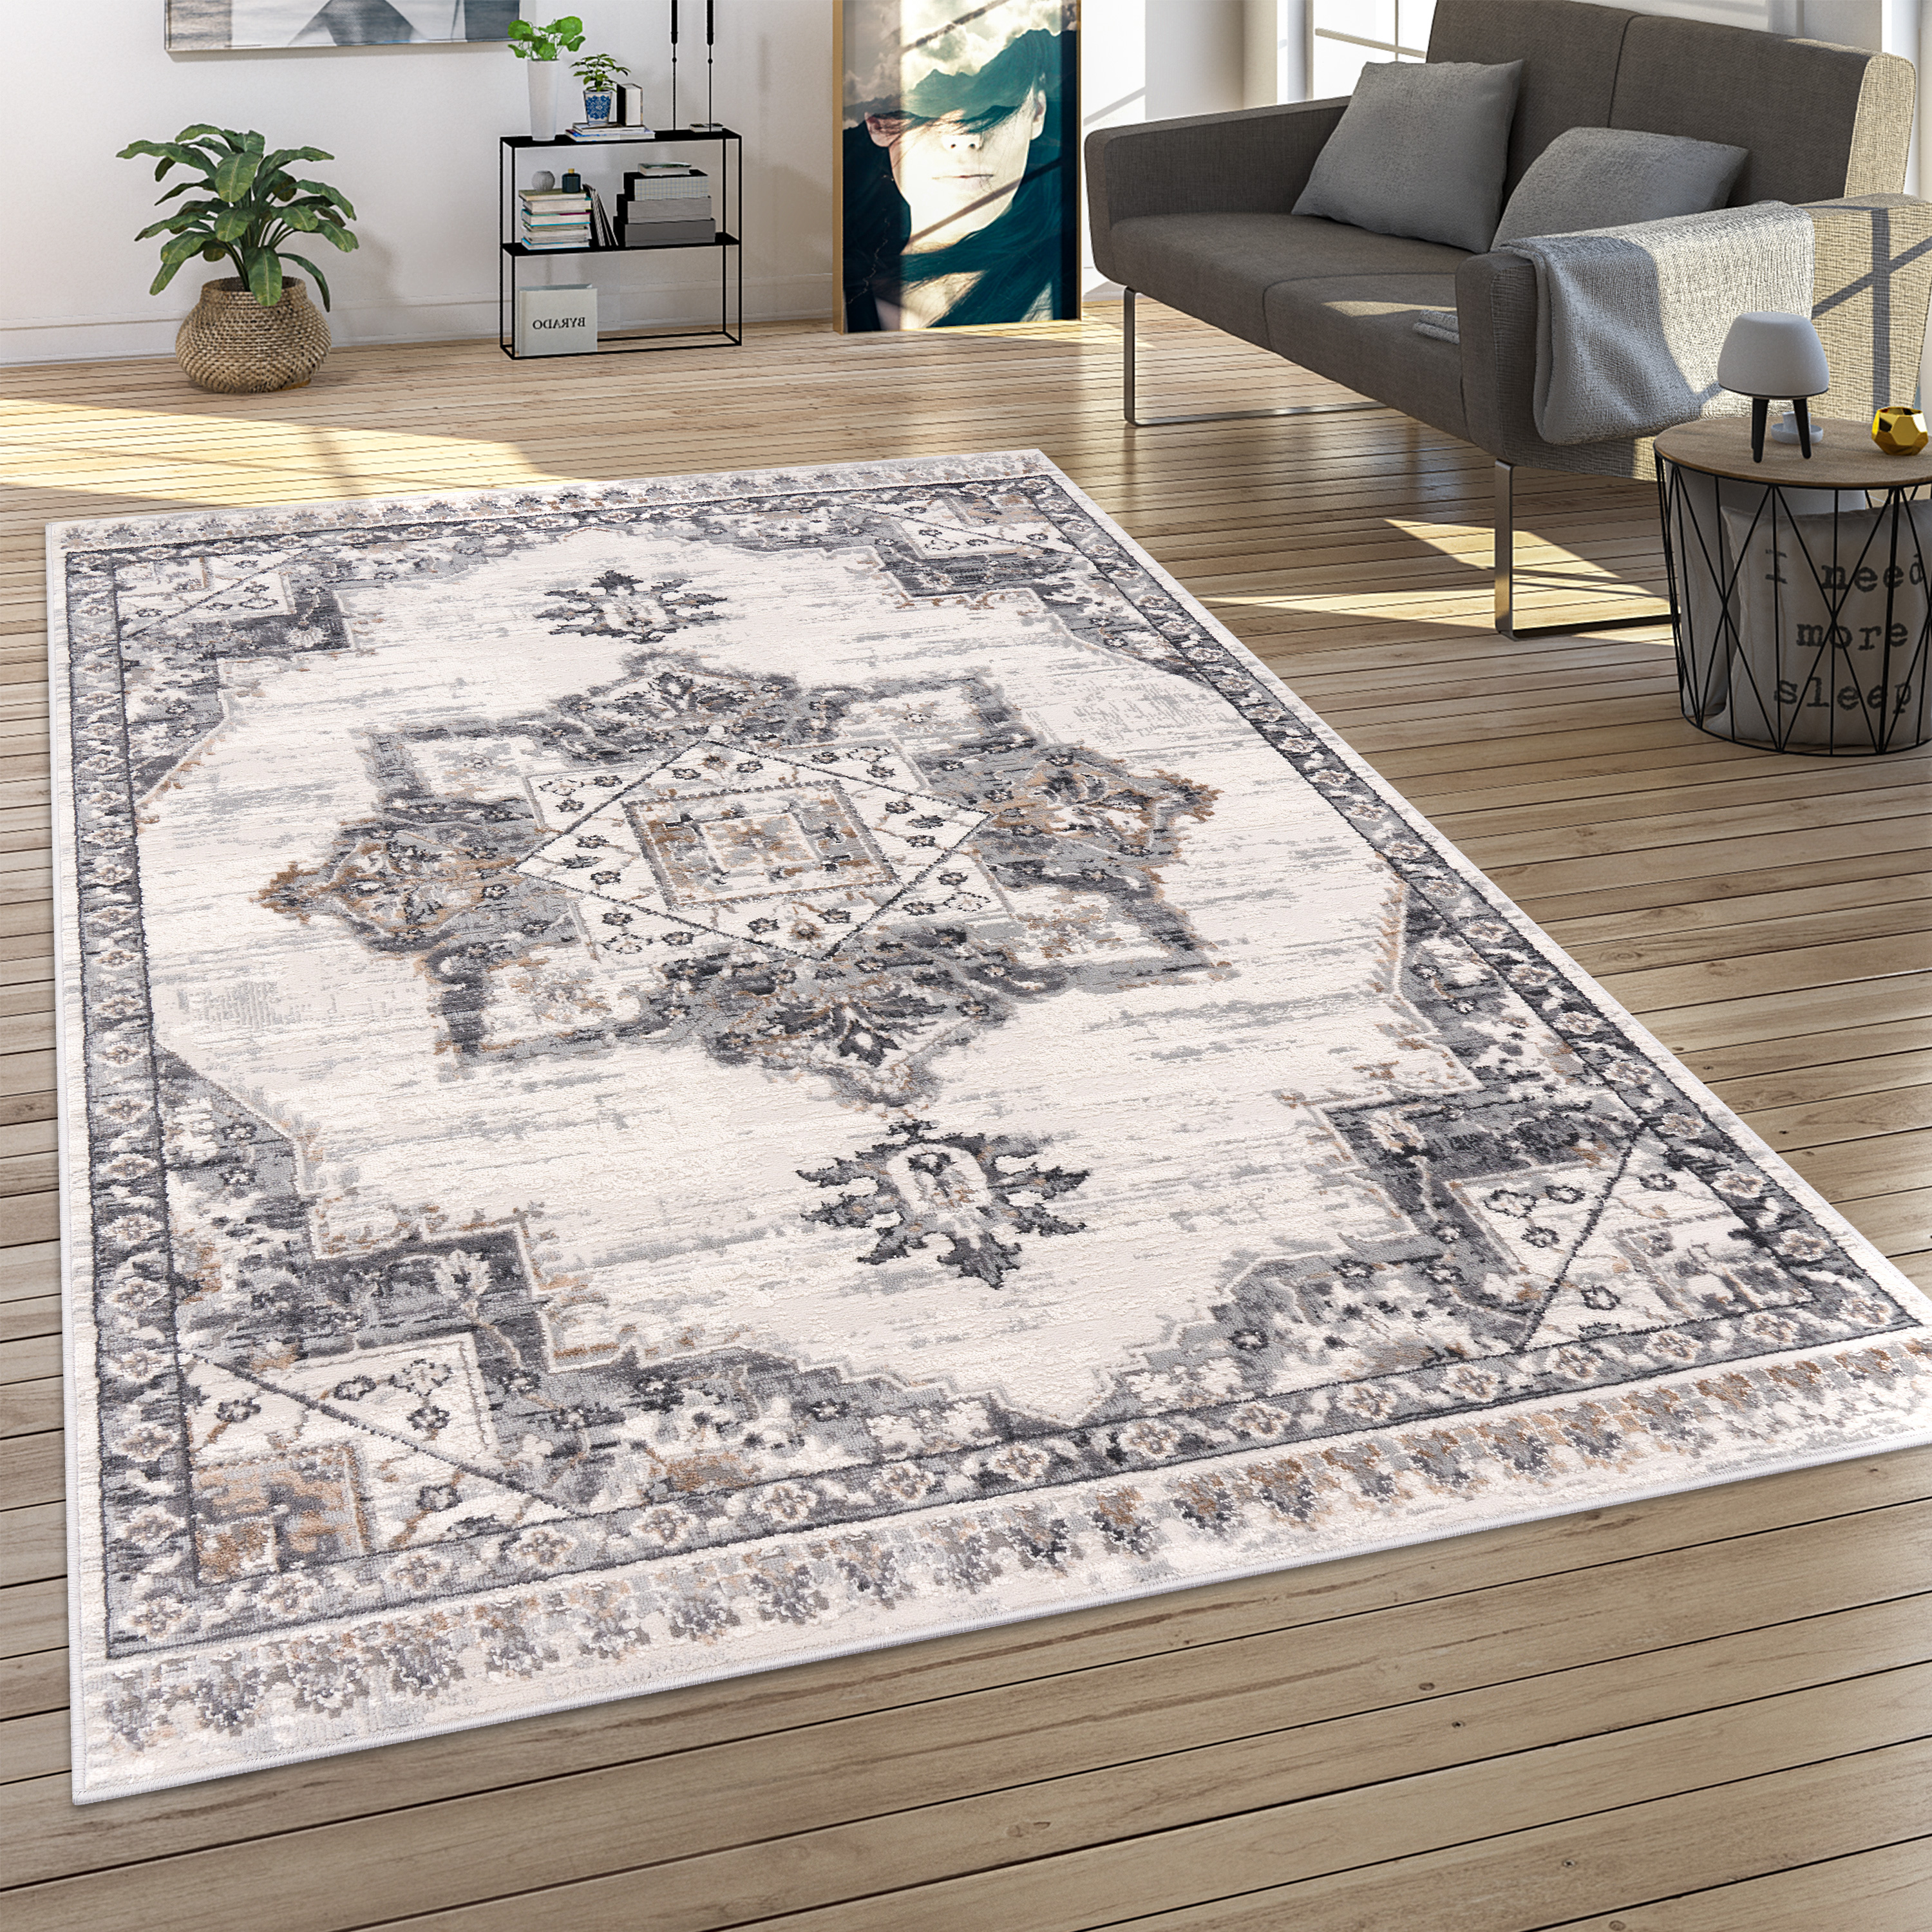 Teppich Esszimmer Orientalisches Muster Ornamente Grau Orientalisch